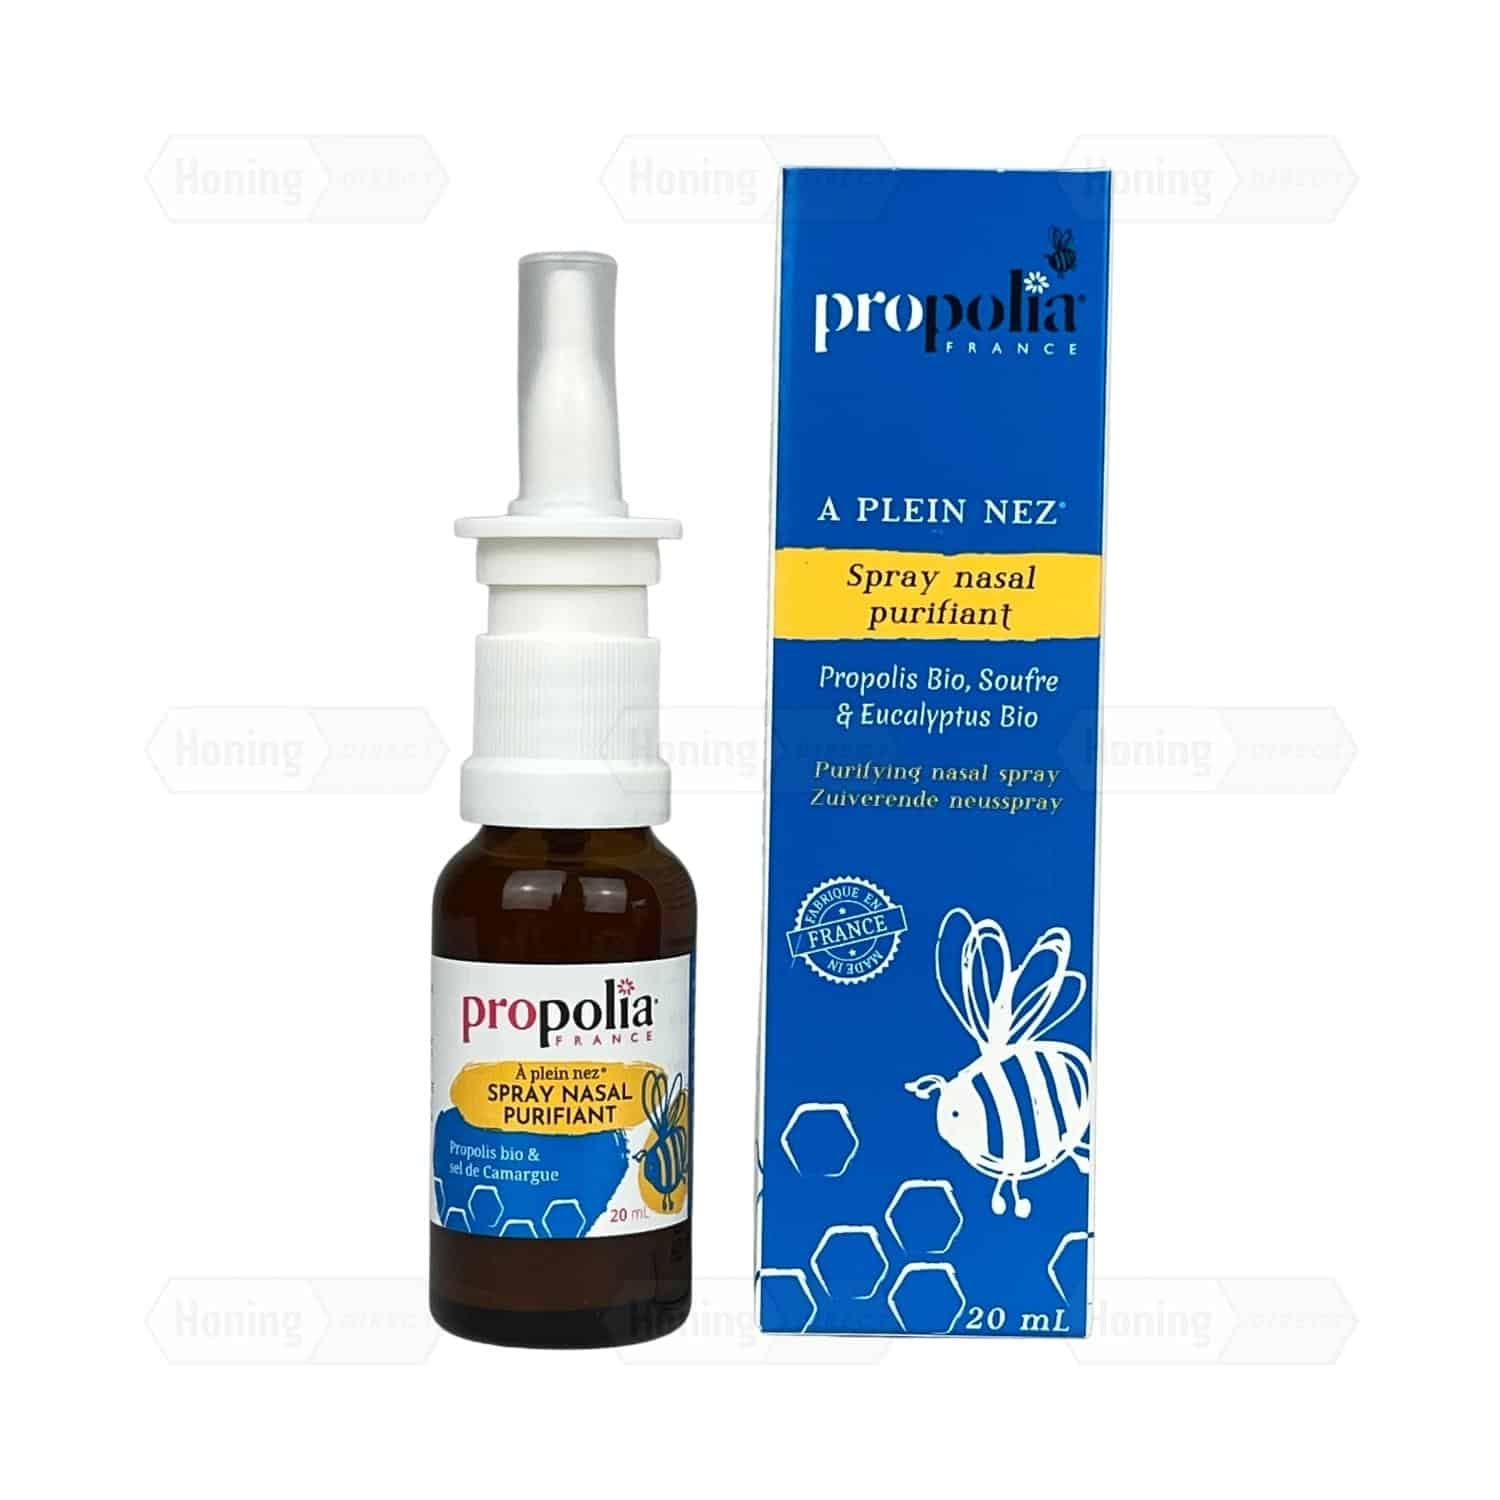 Propolis neusspray samen met de verpakking